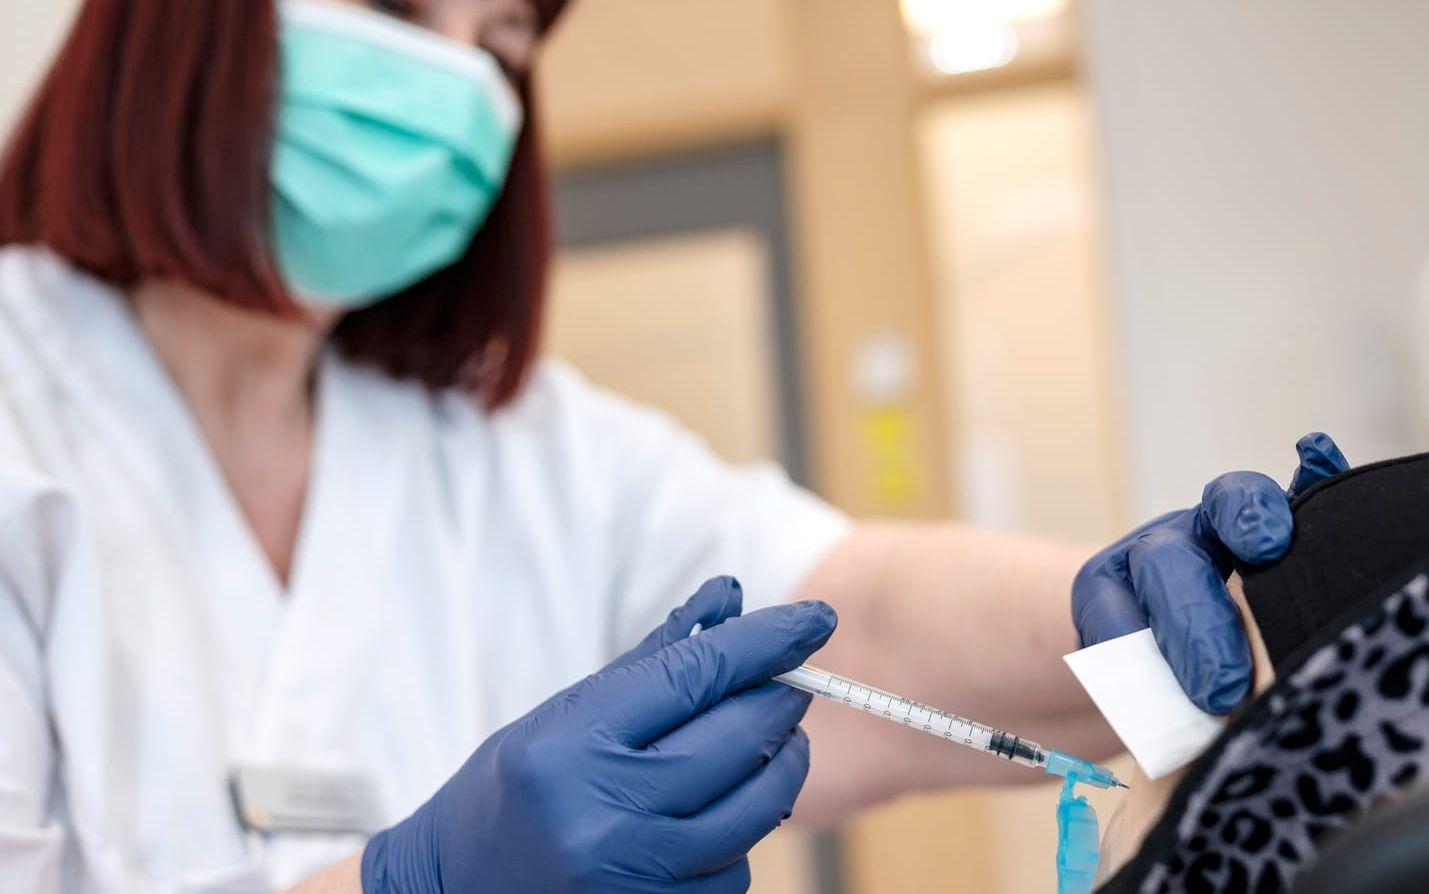 Regionfullmäktige i Västra Götaland har beslutat att vaccin mot kikhosta samt pneumokocker ska bli avgiftsfritt för de grupper som Folkhälsomyndigheten rekommenderar ska vaccineras. Genrebild.